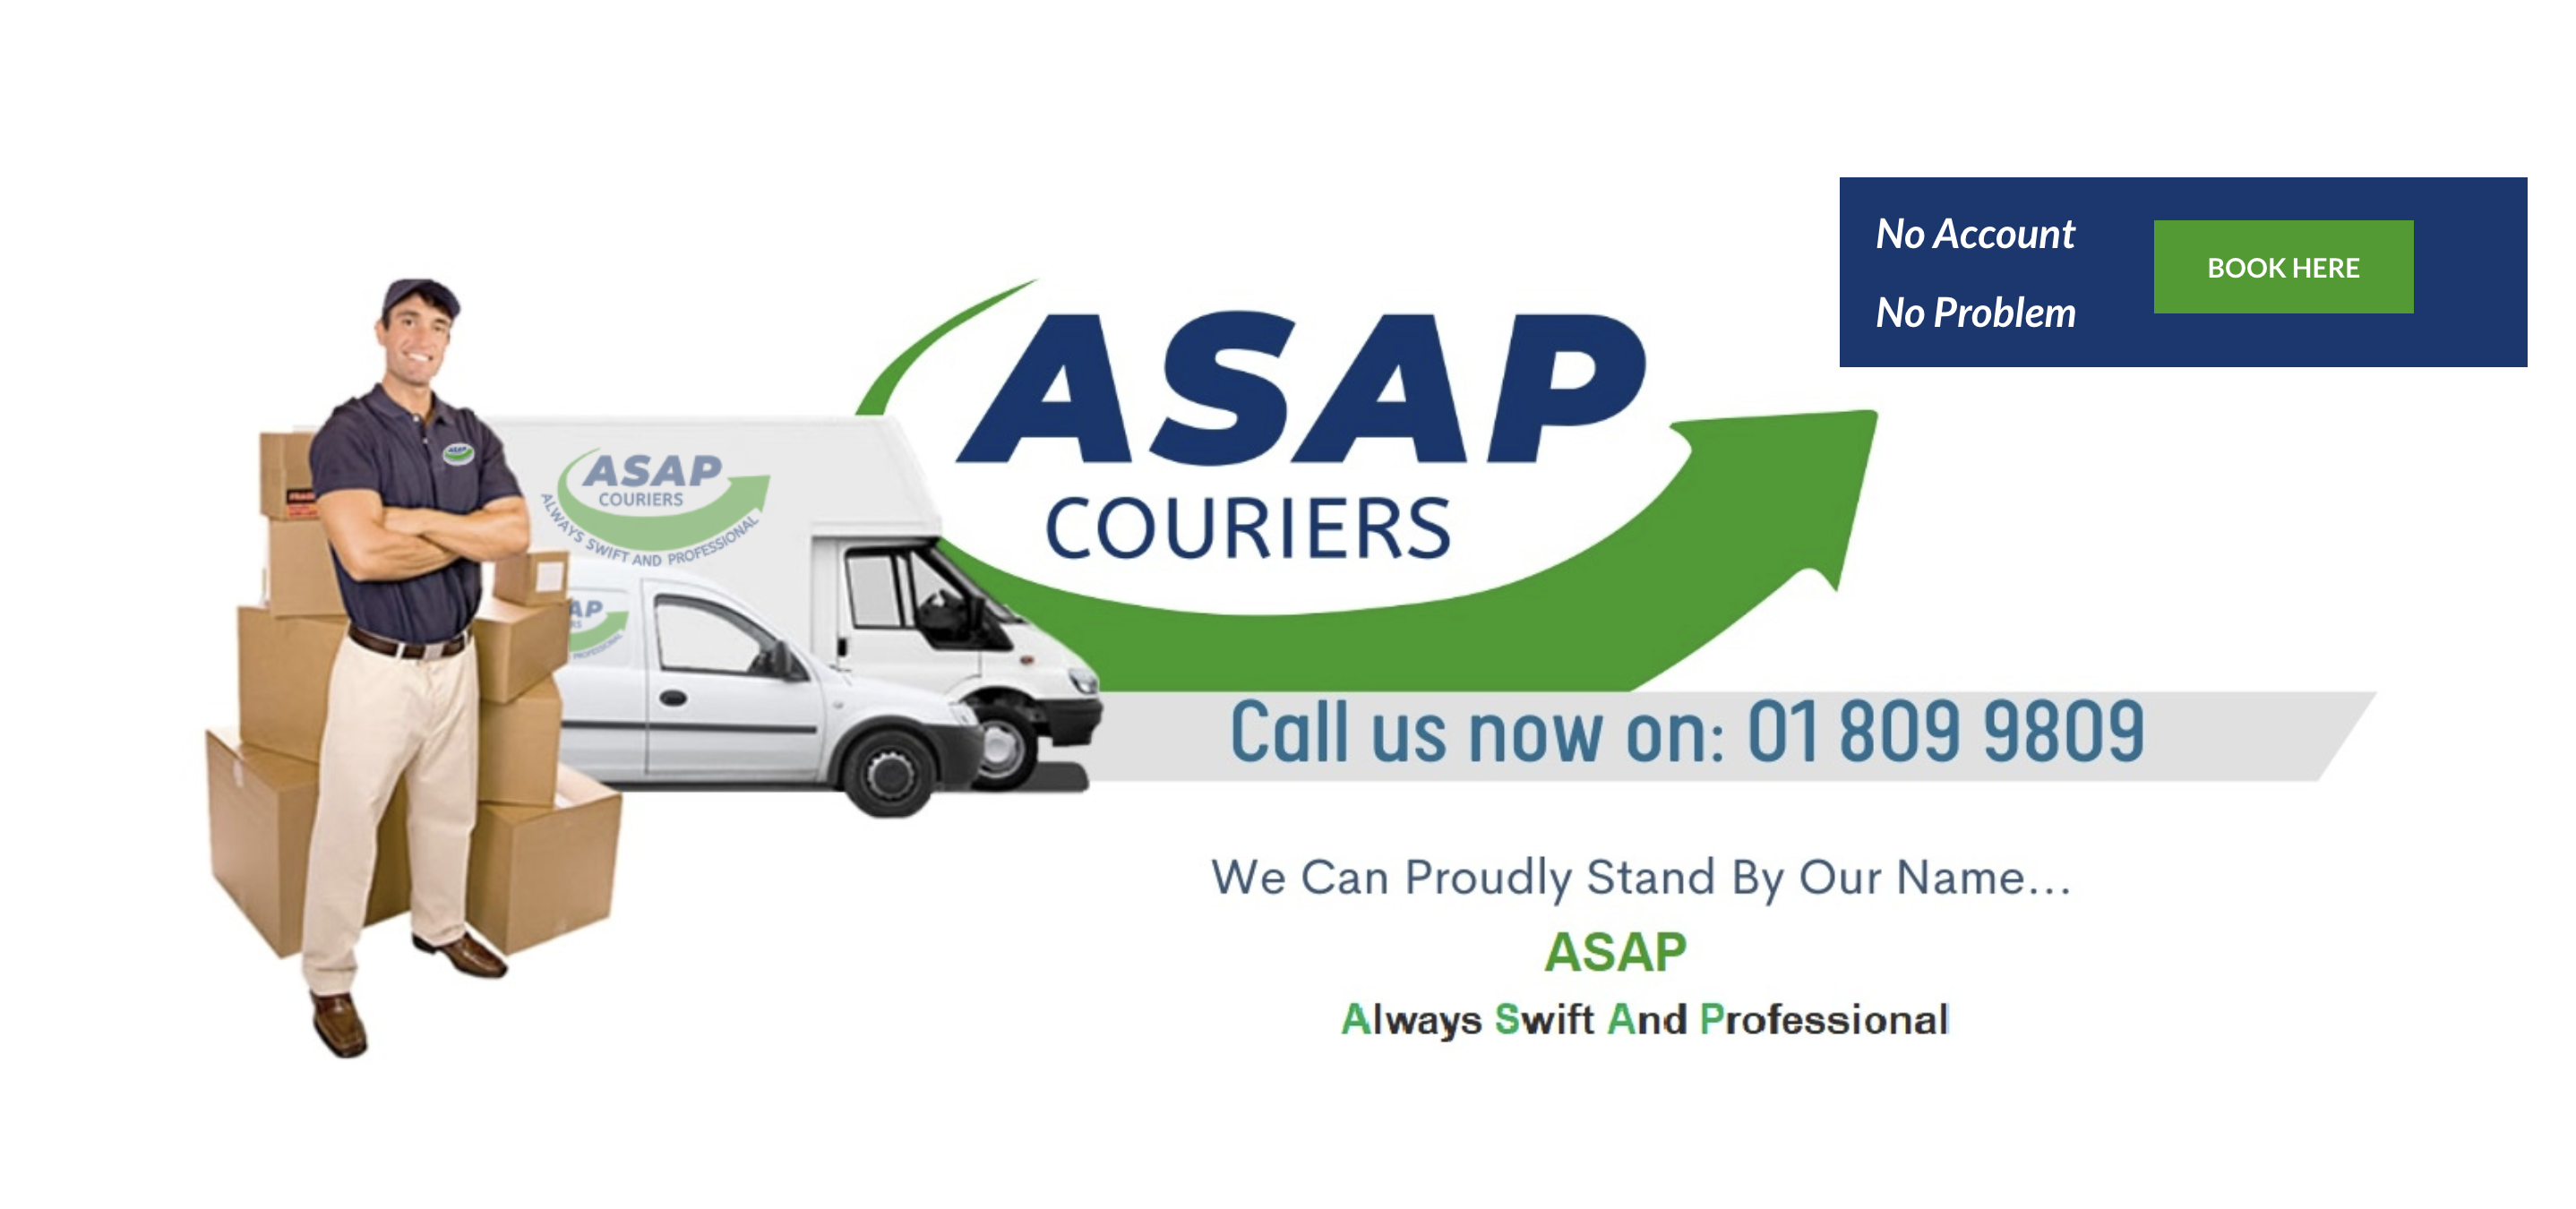 ASAP Courier Service